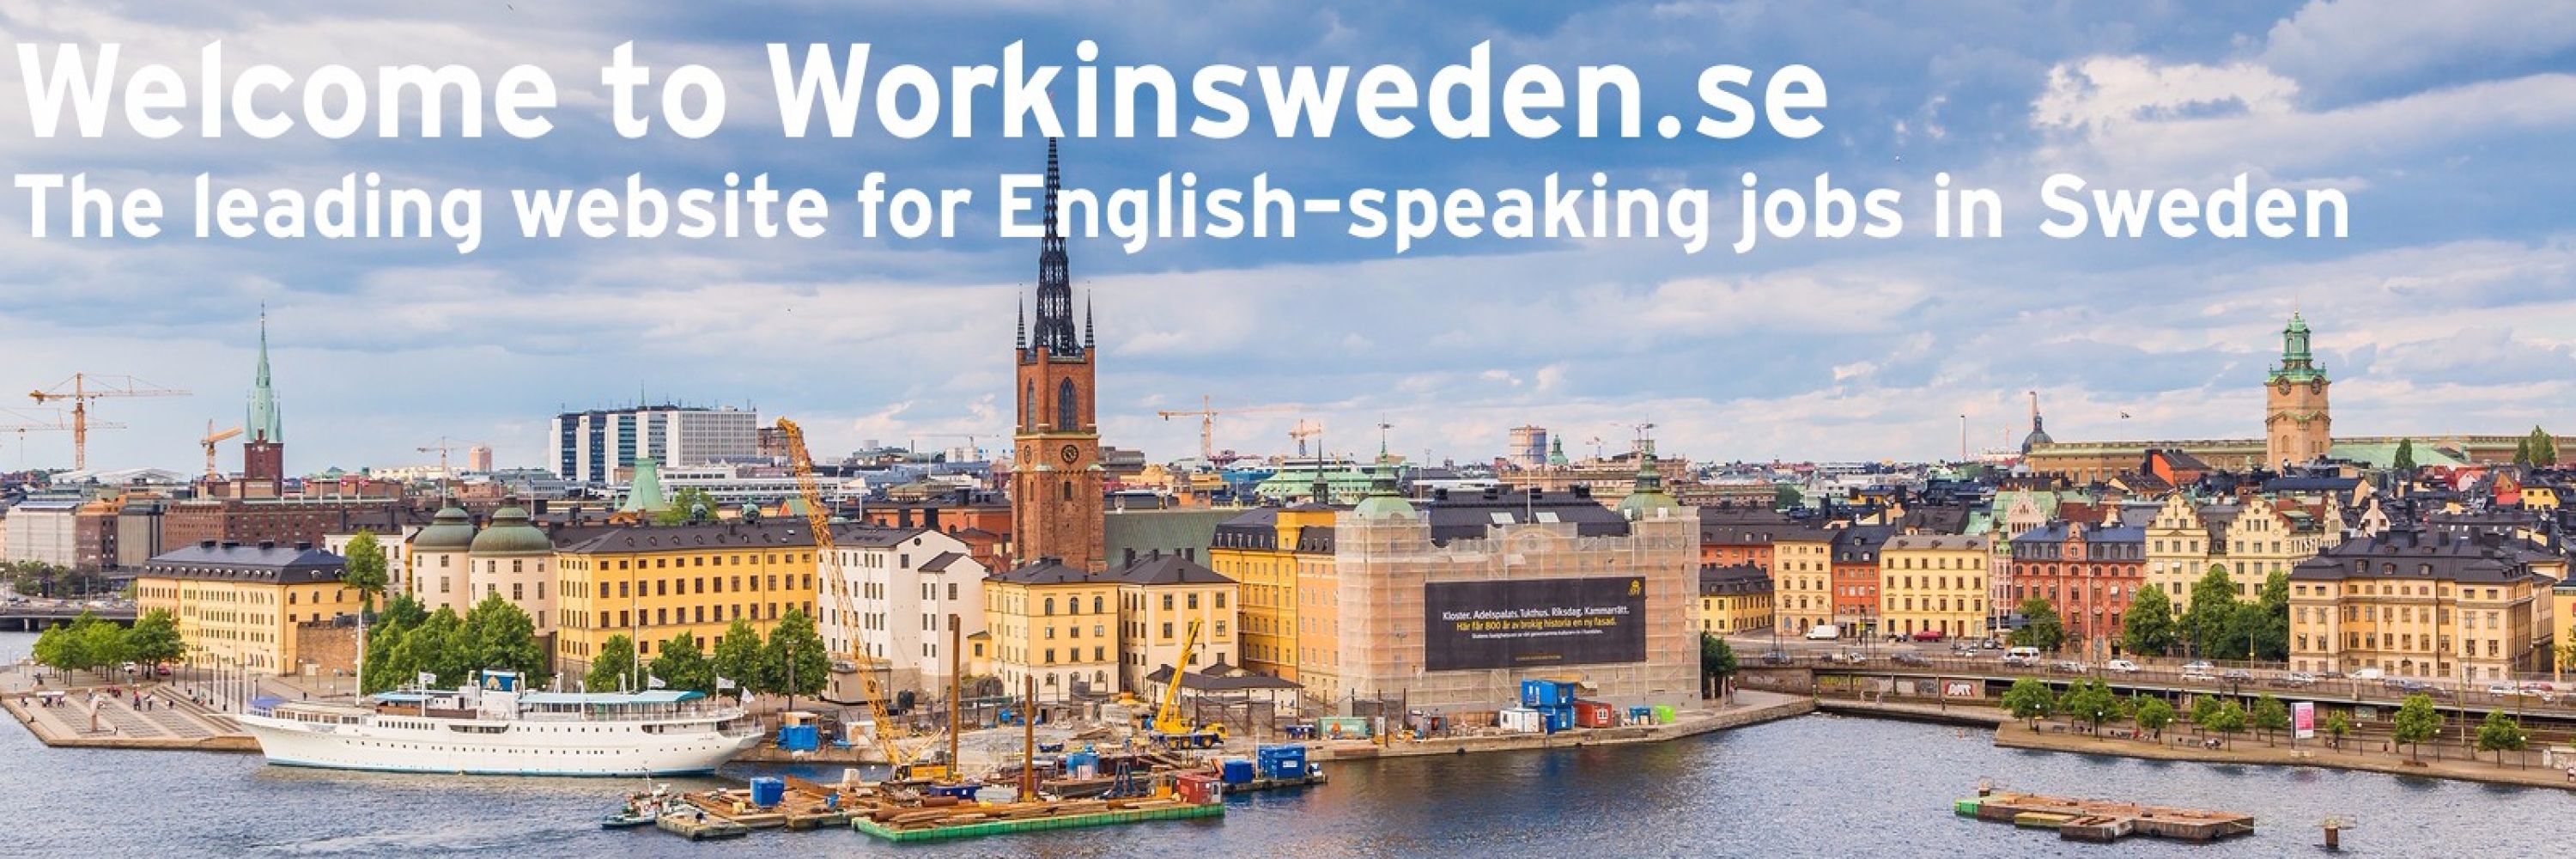 مشاغل و حرفه های مورد نیاز در سوئد ۲۰۱۶- ۲۰۱۷ (قسمت اول)